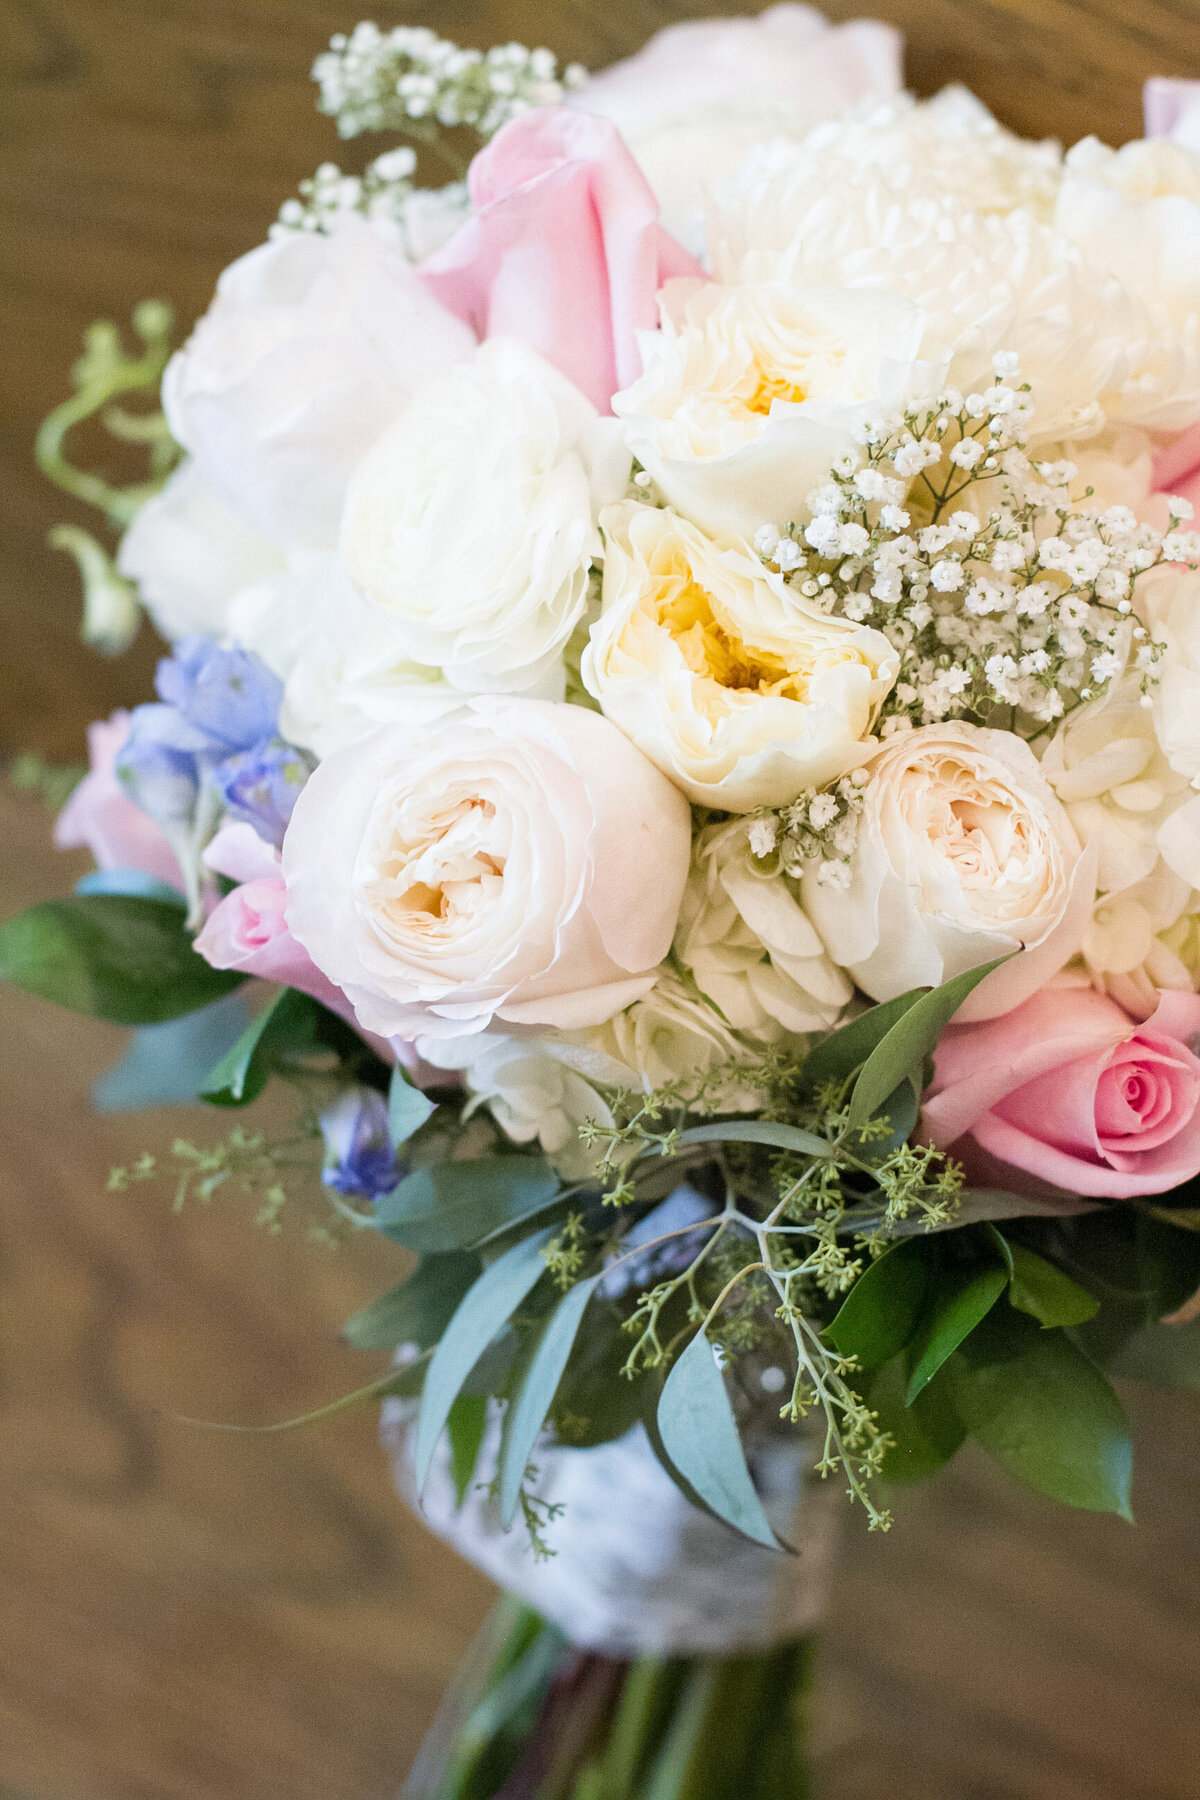 njeri-bishota-lauren-ashley-bridal-flower-bouquet-depth-of-field-wedding-detail